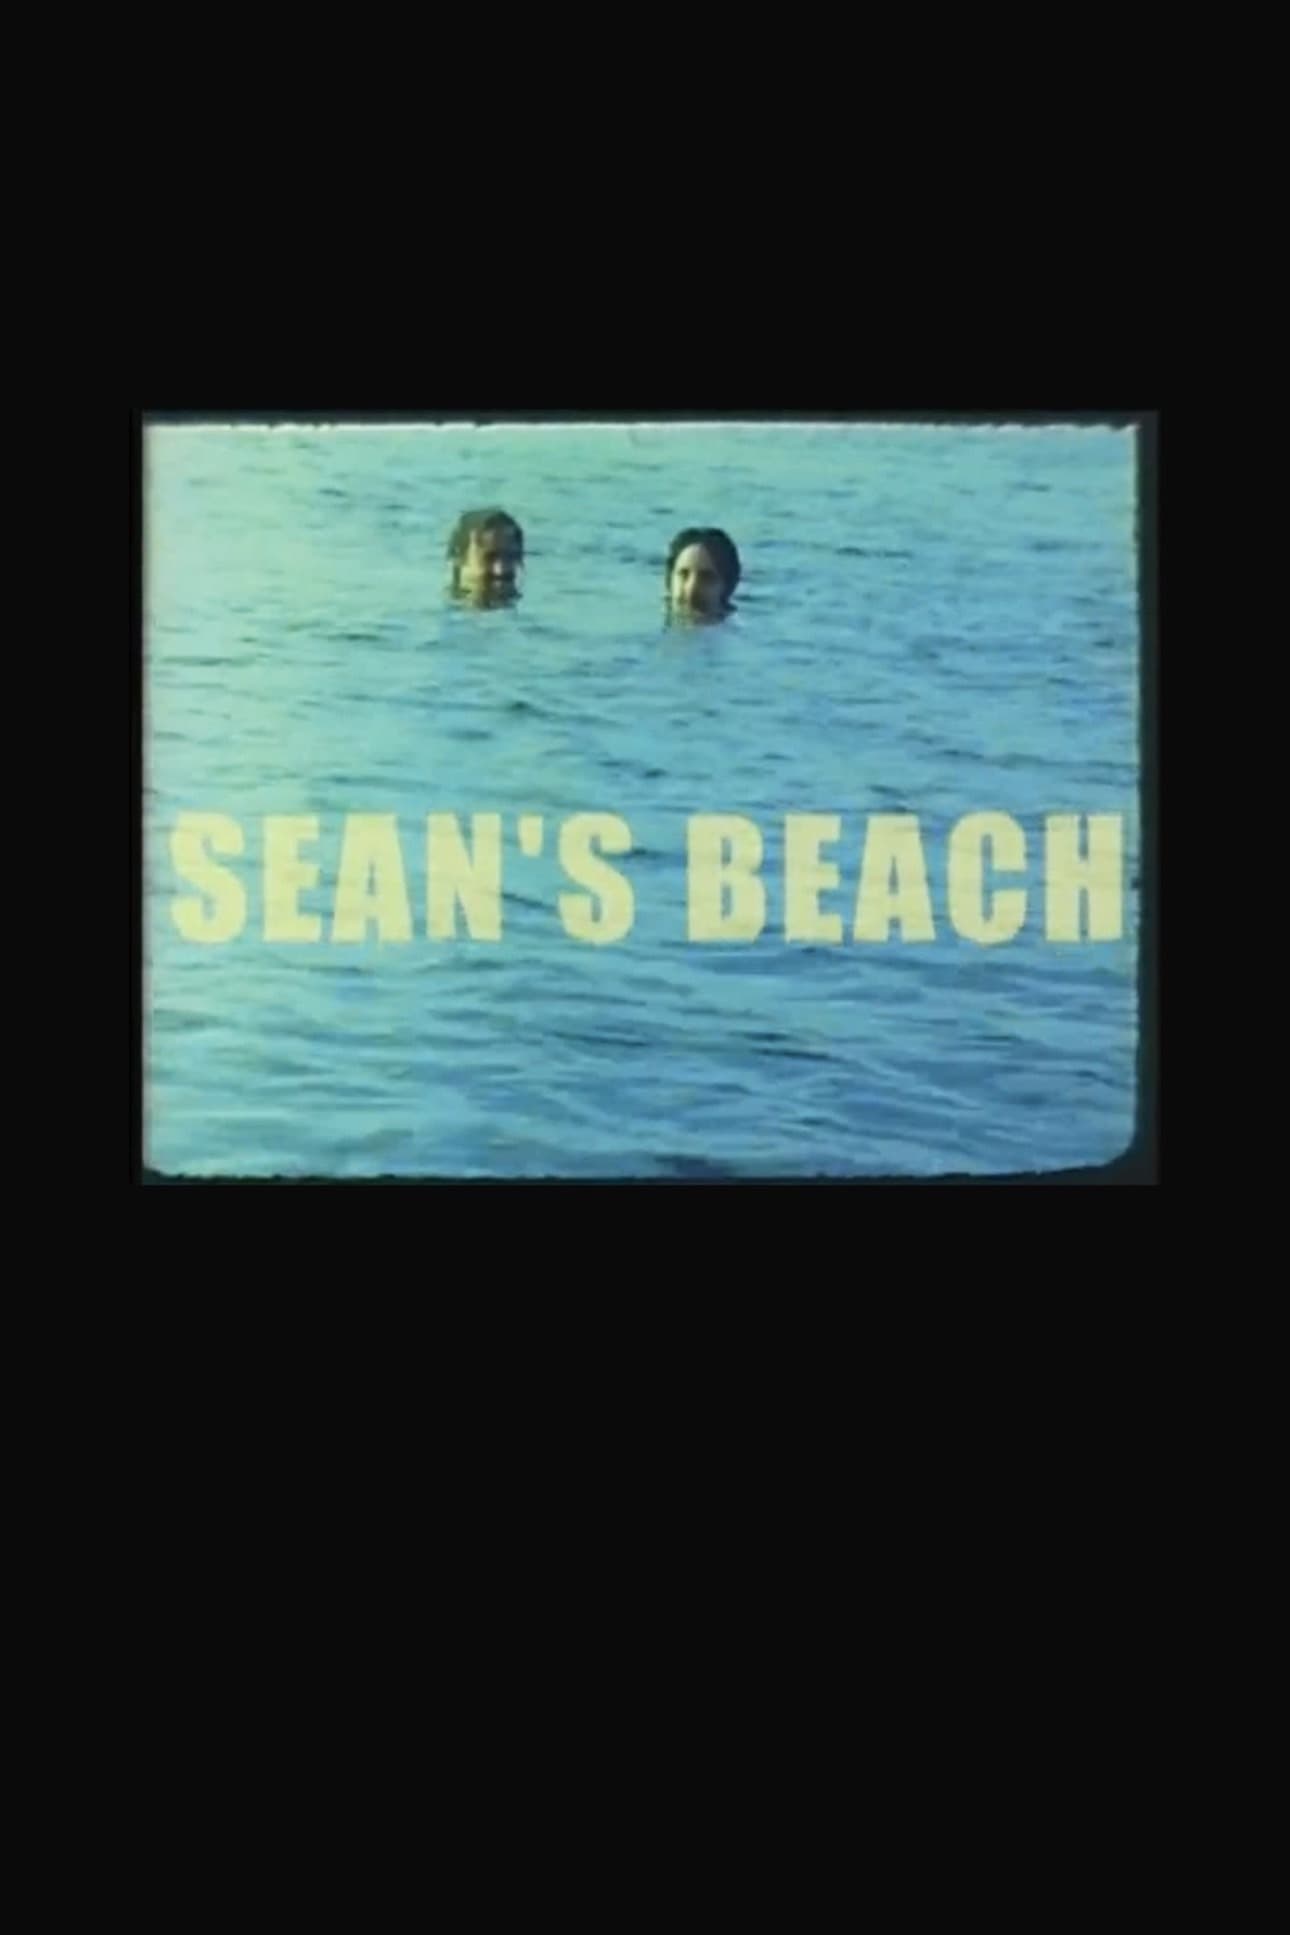 Sean's Beach